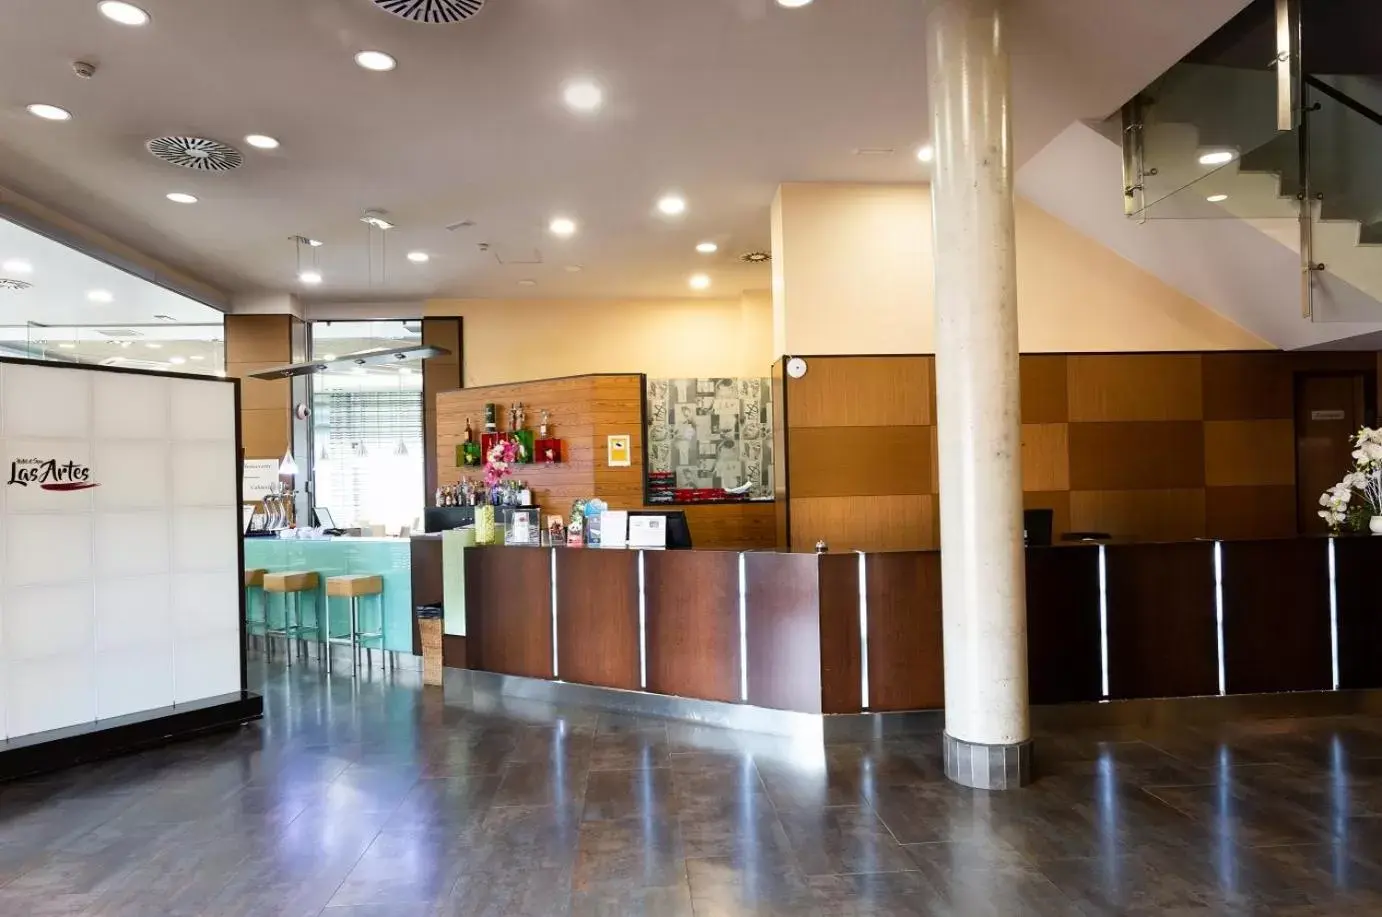 Lobby or reception, Lobby/Reception in Hotel Las Artes